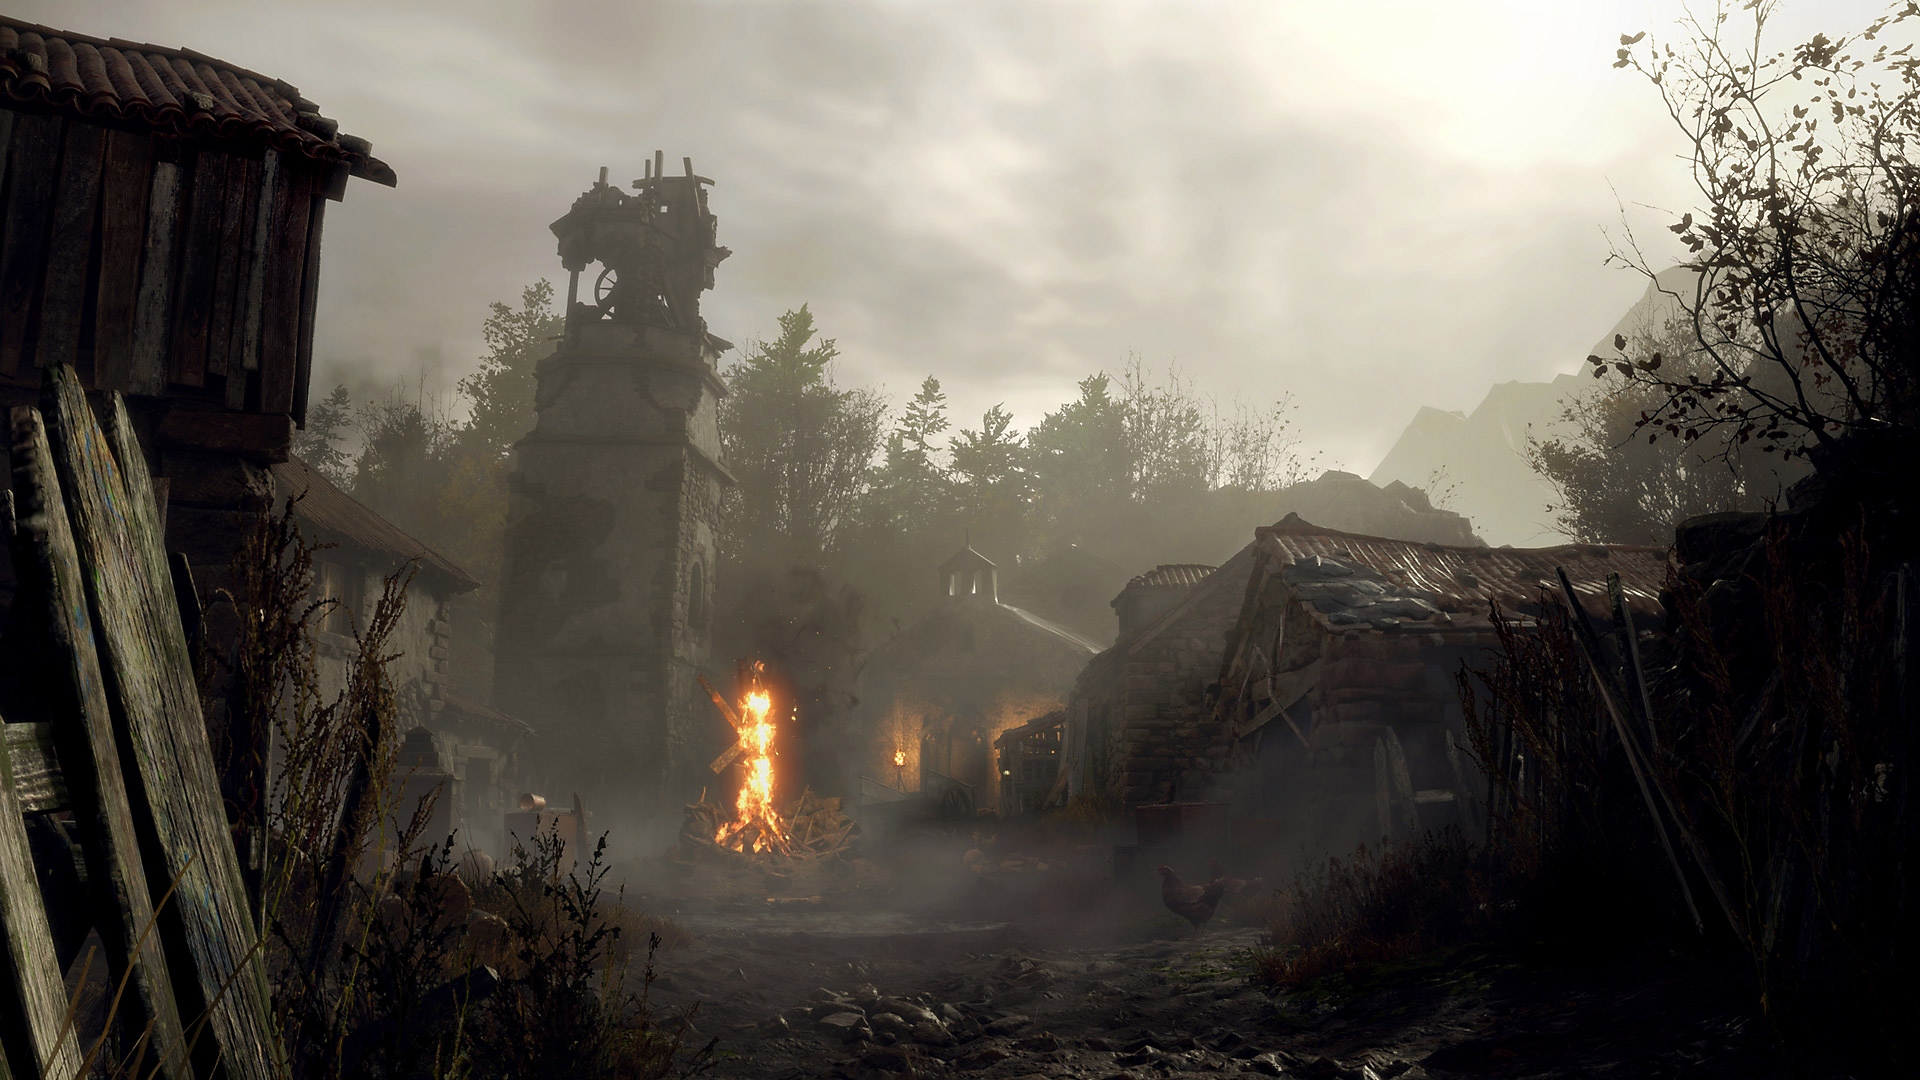 Captura de pantalla de Resident Evil 4 con un crucifijo en llamas en un pueblo polvoriento y en ruinas.